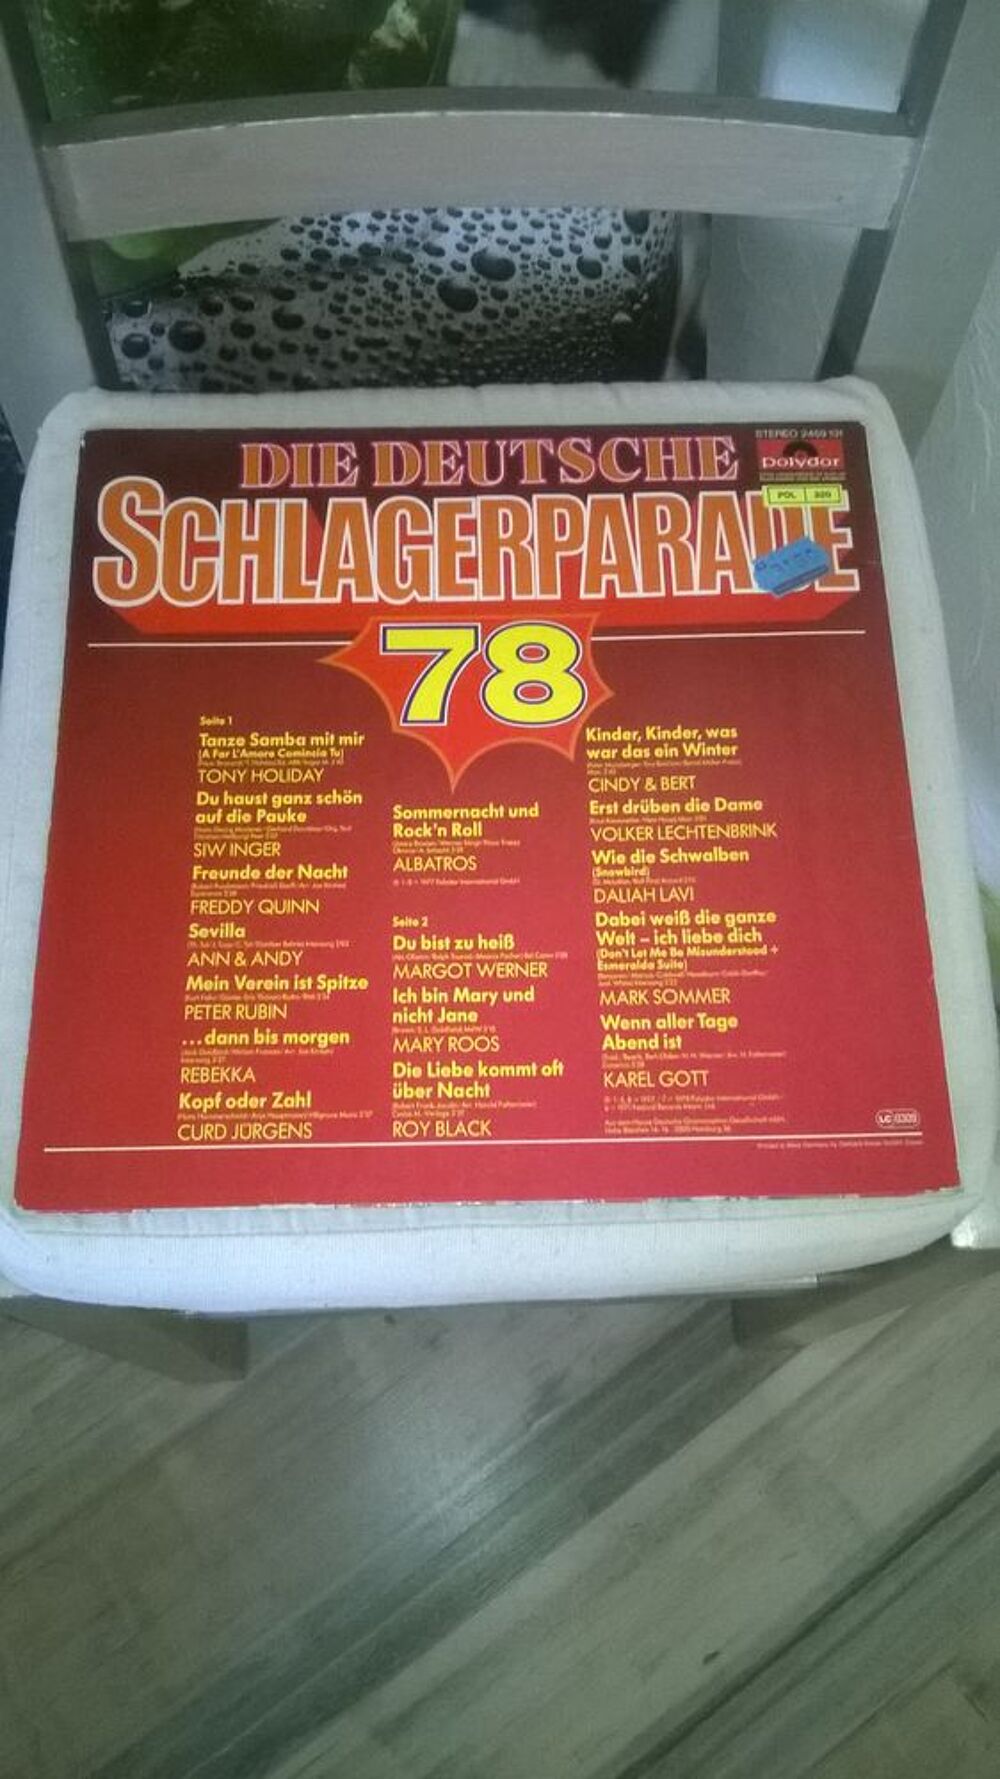 Vinyle Die Deutsche Schlagerparade '78
1978
Excellent etat CD et vinyles